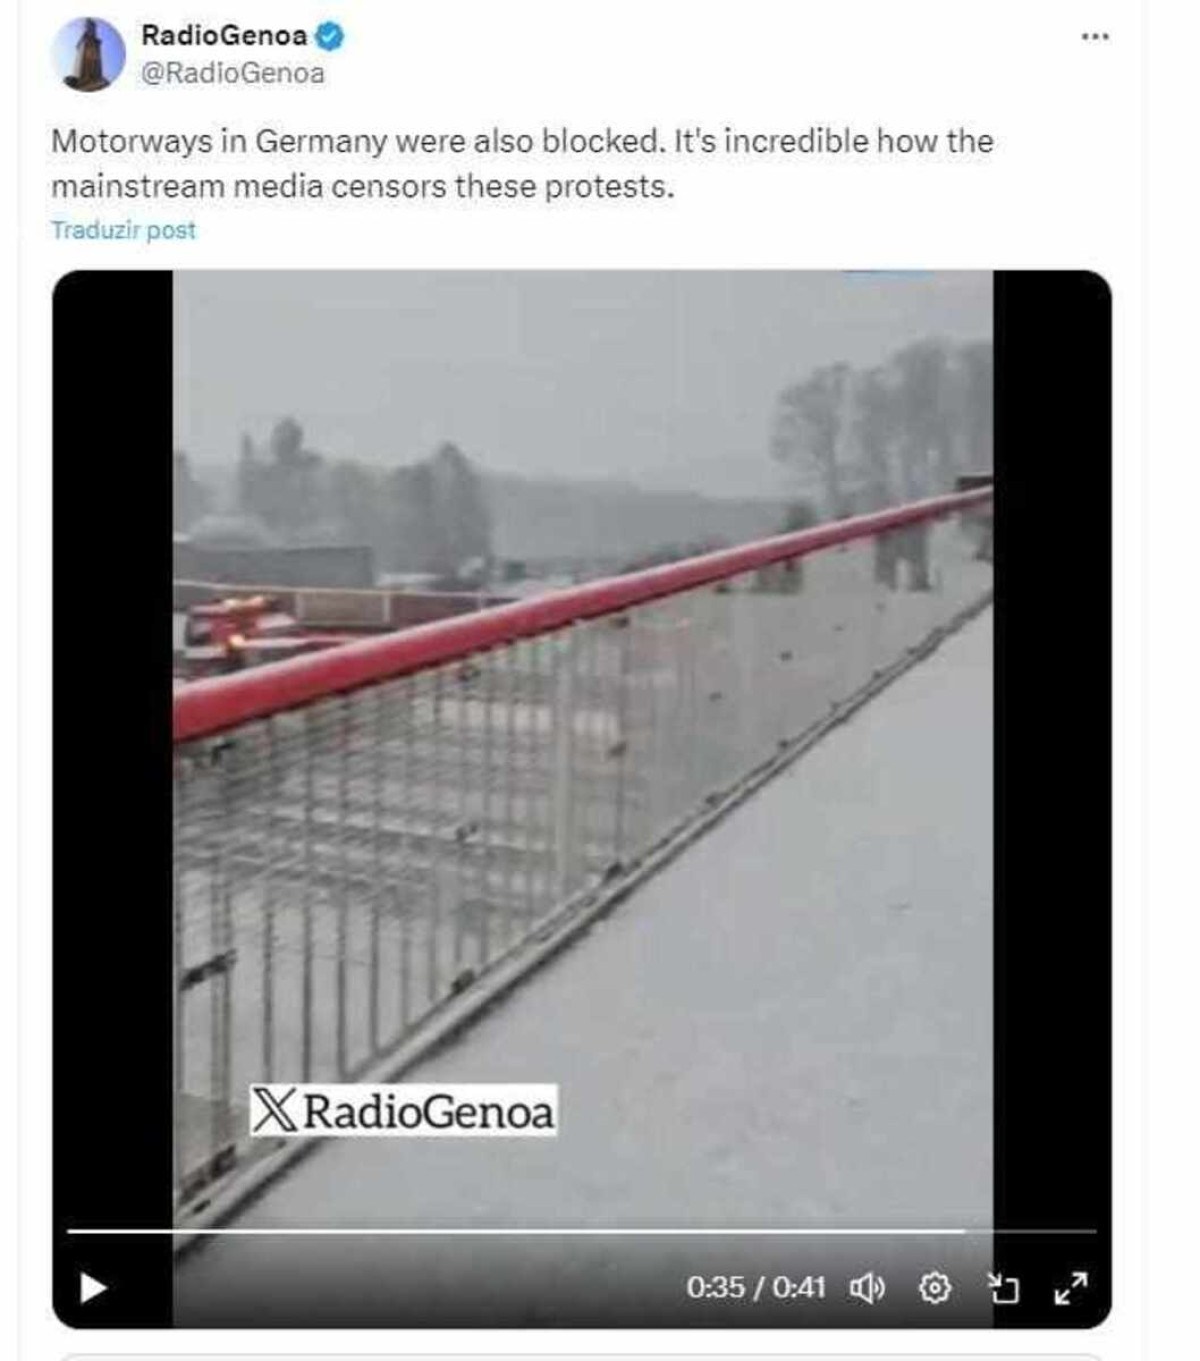 A busca reversa pelas imagens do vídeo apontou uma publicação de 8 de janeiro deste ano, que mostra que o protesto aconteceu na Alemanha